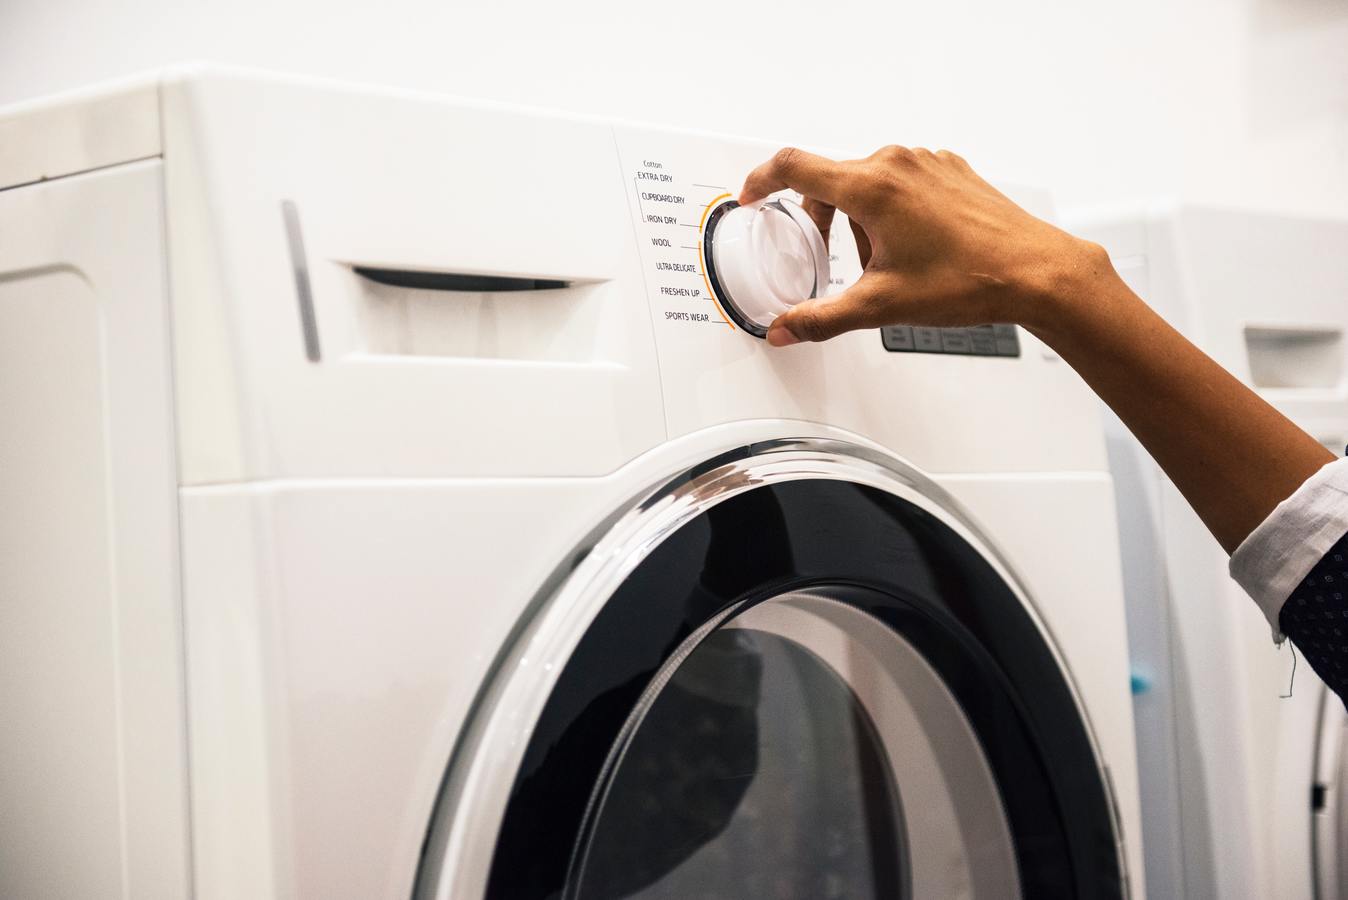 Truque inteligente para limpar máquina de lavar roupas saiba como cuidar bem do seu eletrodoméstico